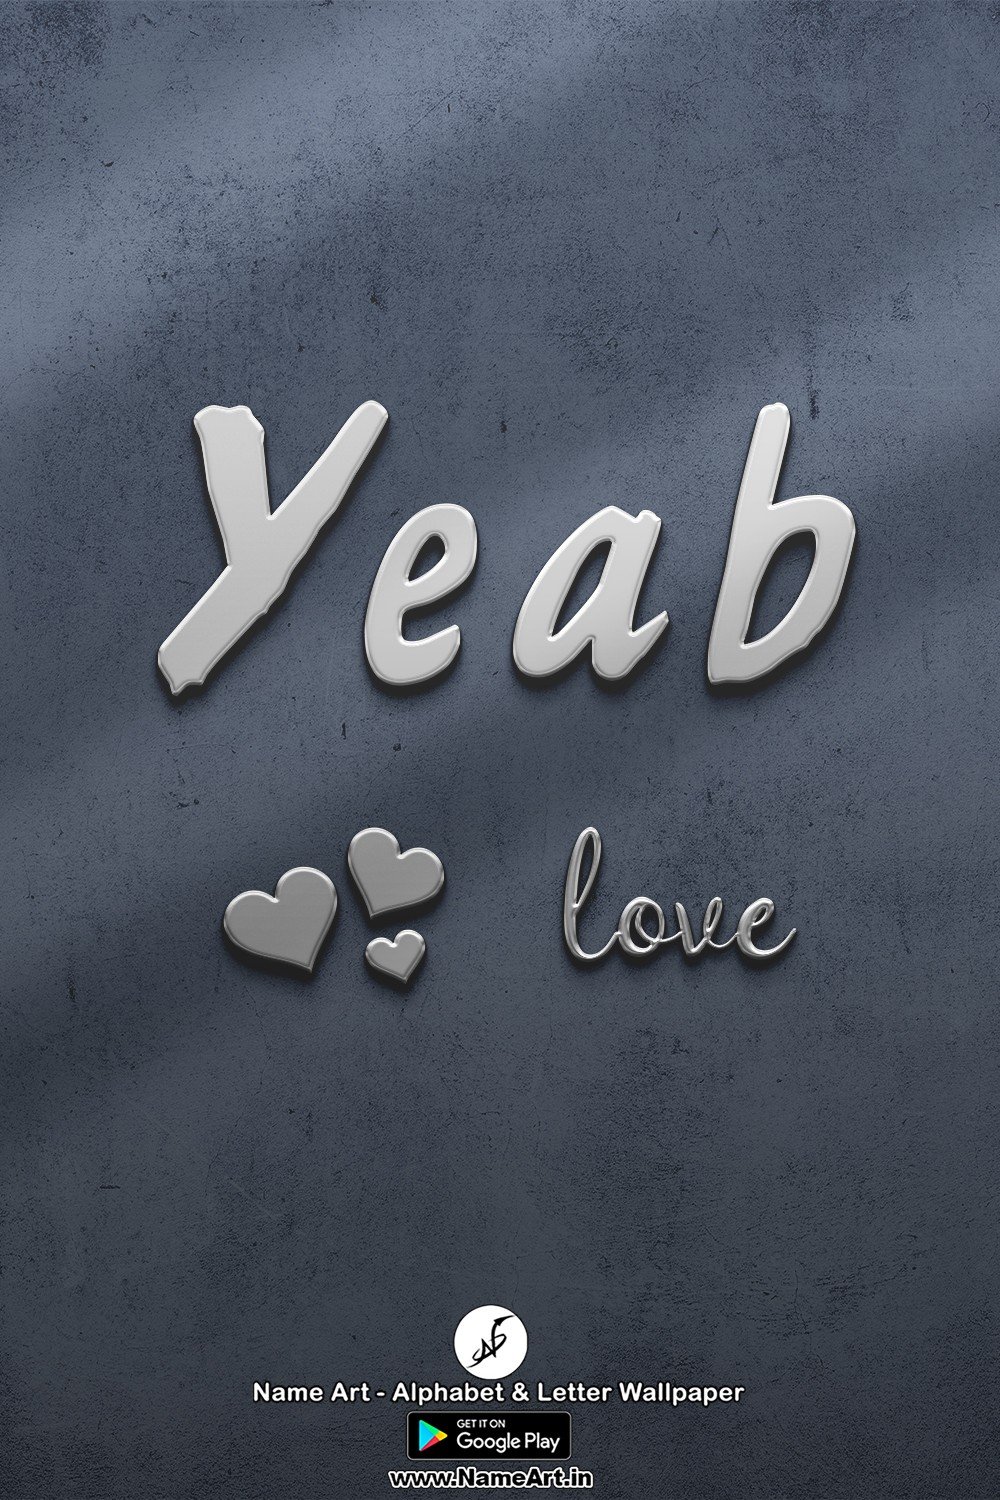 Yeab | Whatsapp Status Yeab | Happy Birthday To You !! | Yeab New Whatsapp Status images |